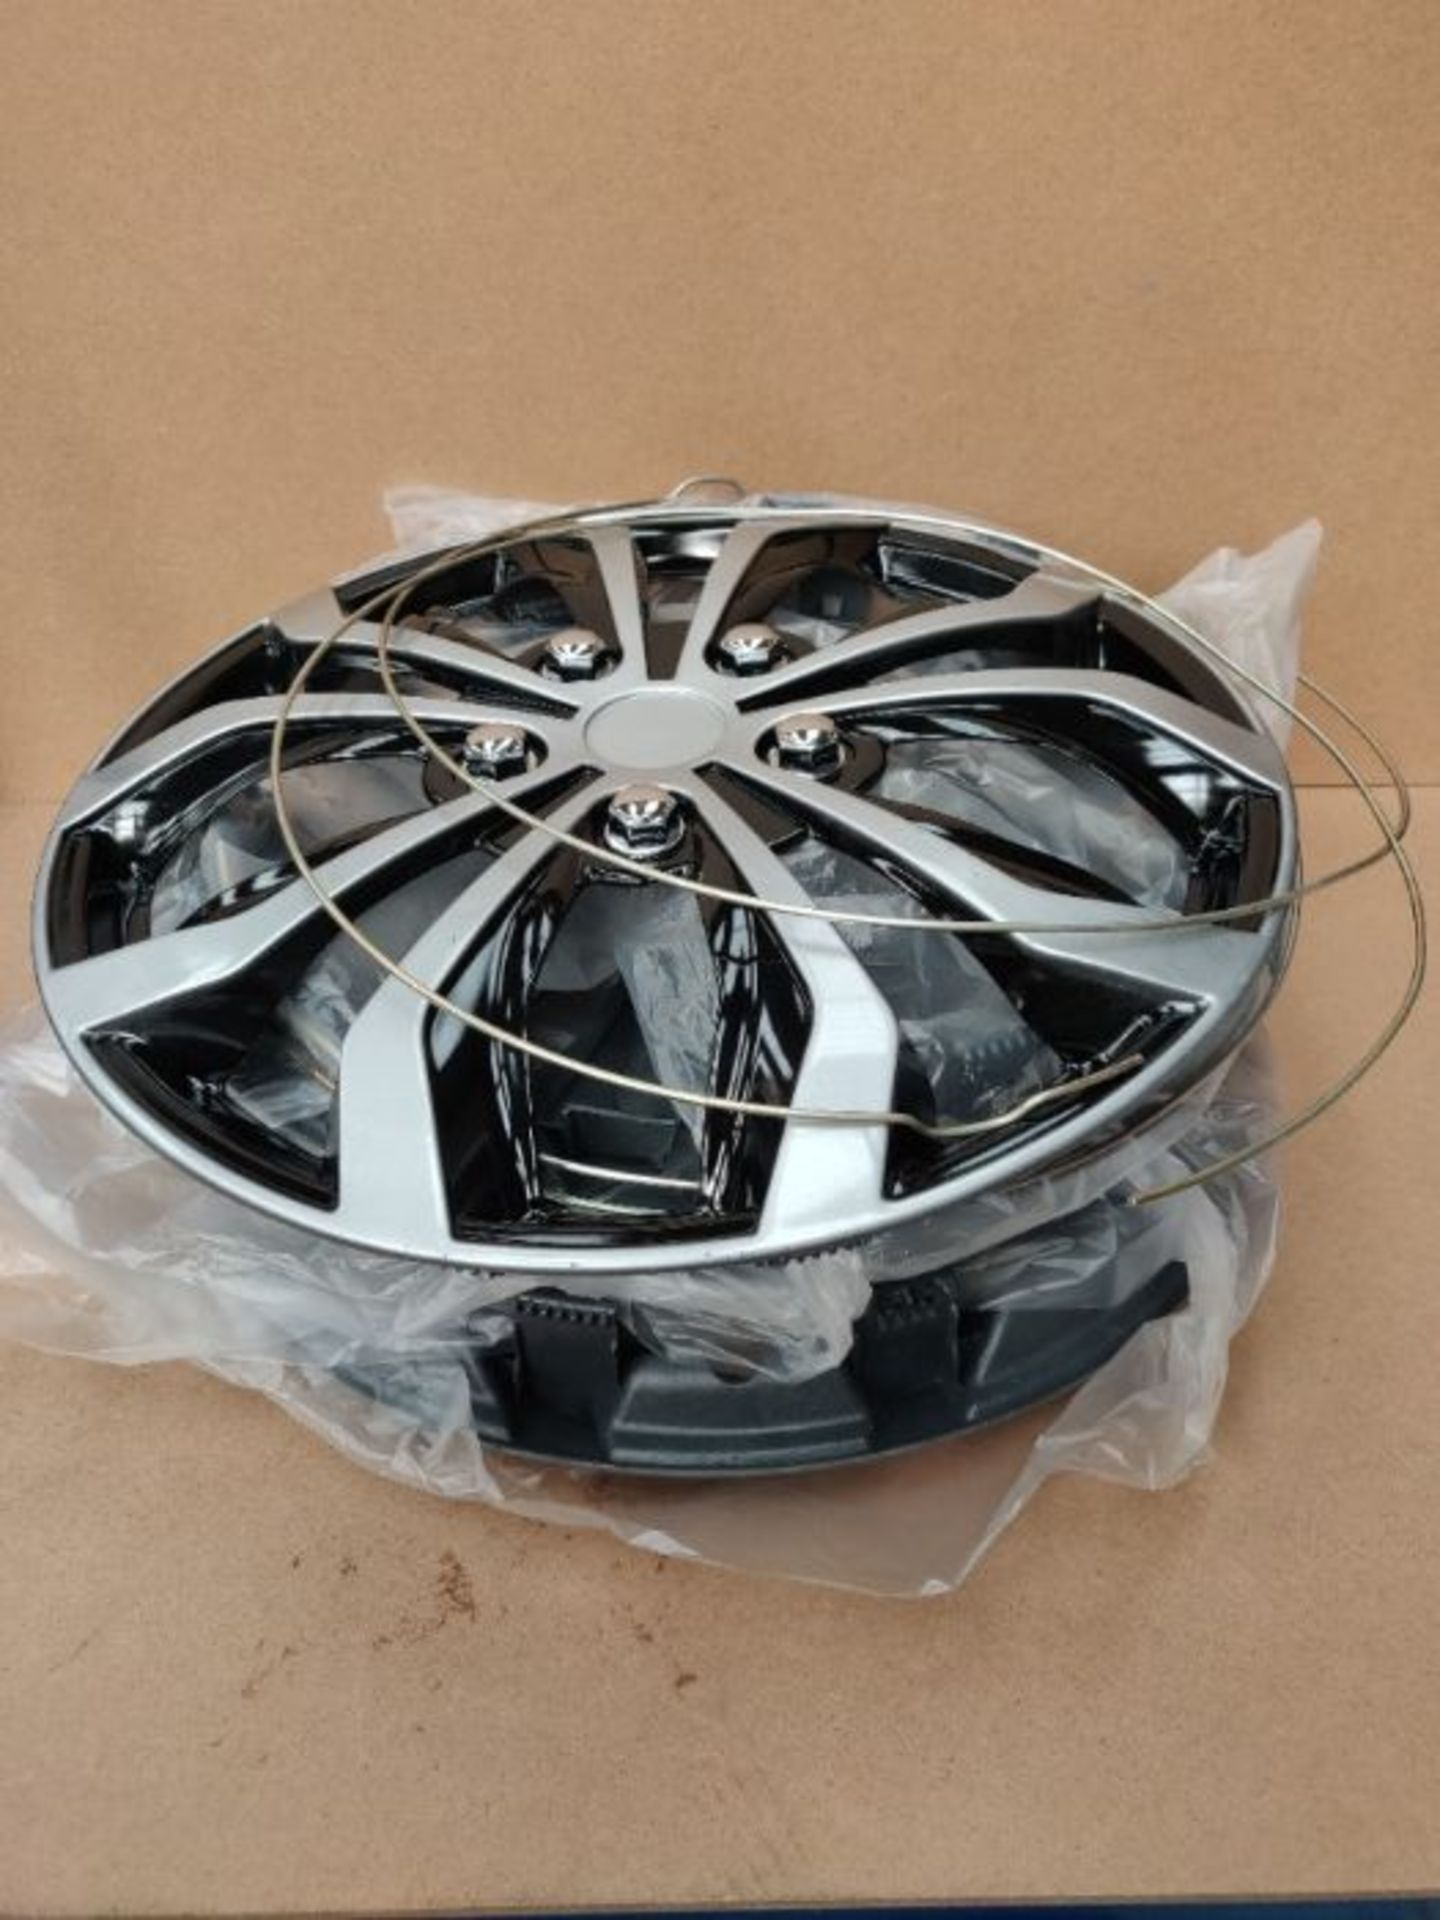 Unitec 75569 Daytona Wheel Trims, Set of 4, Black / Silver, 16 inches - Image 3 of 3